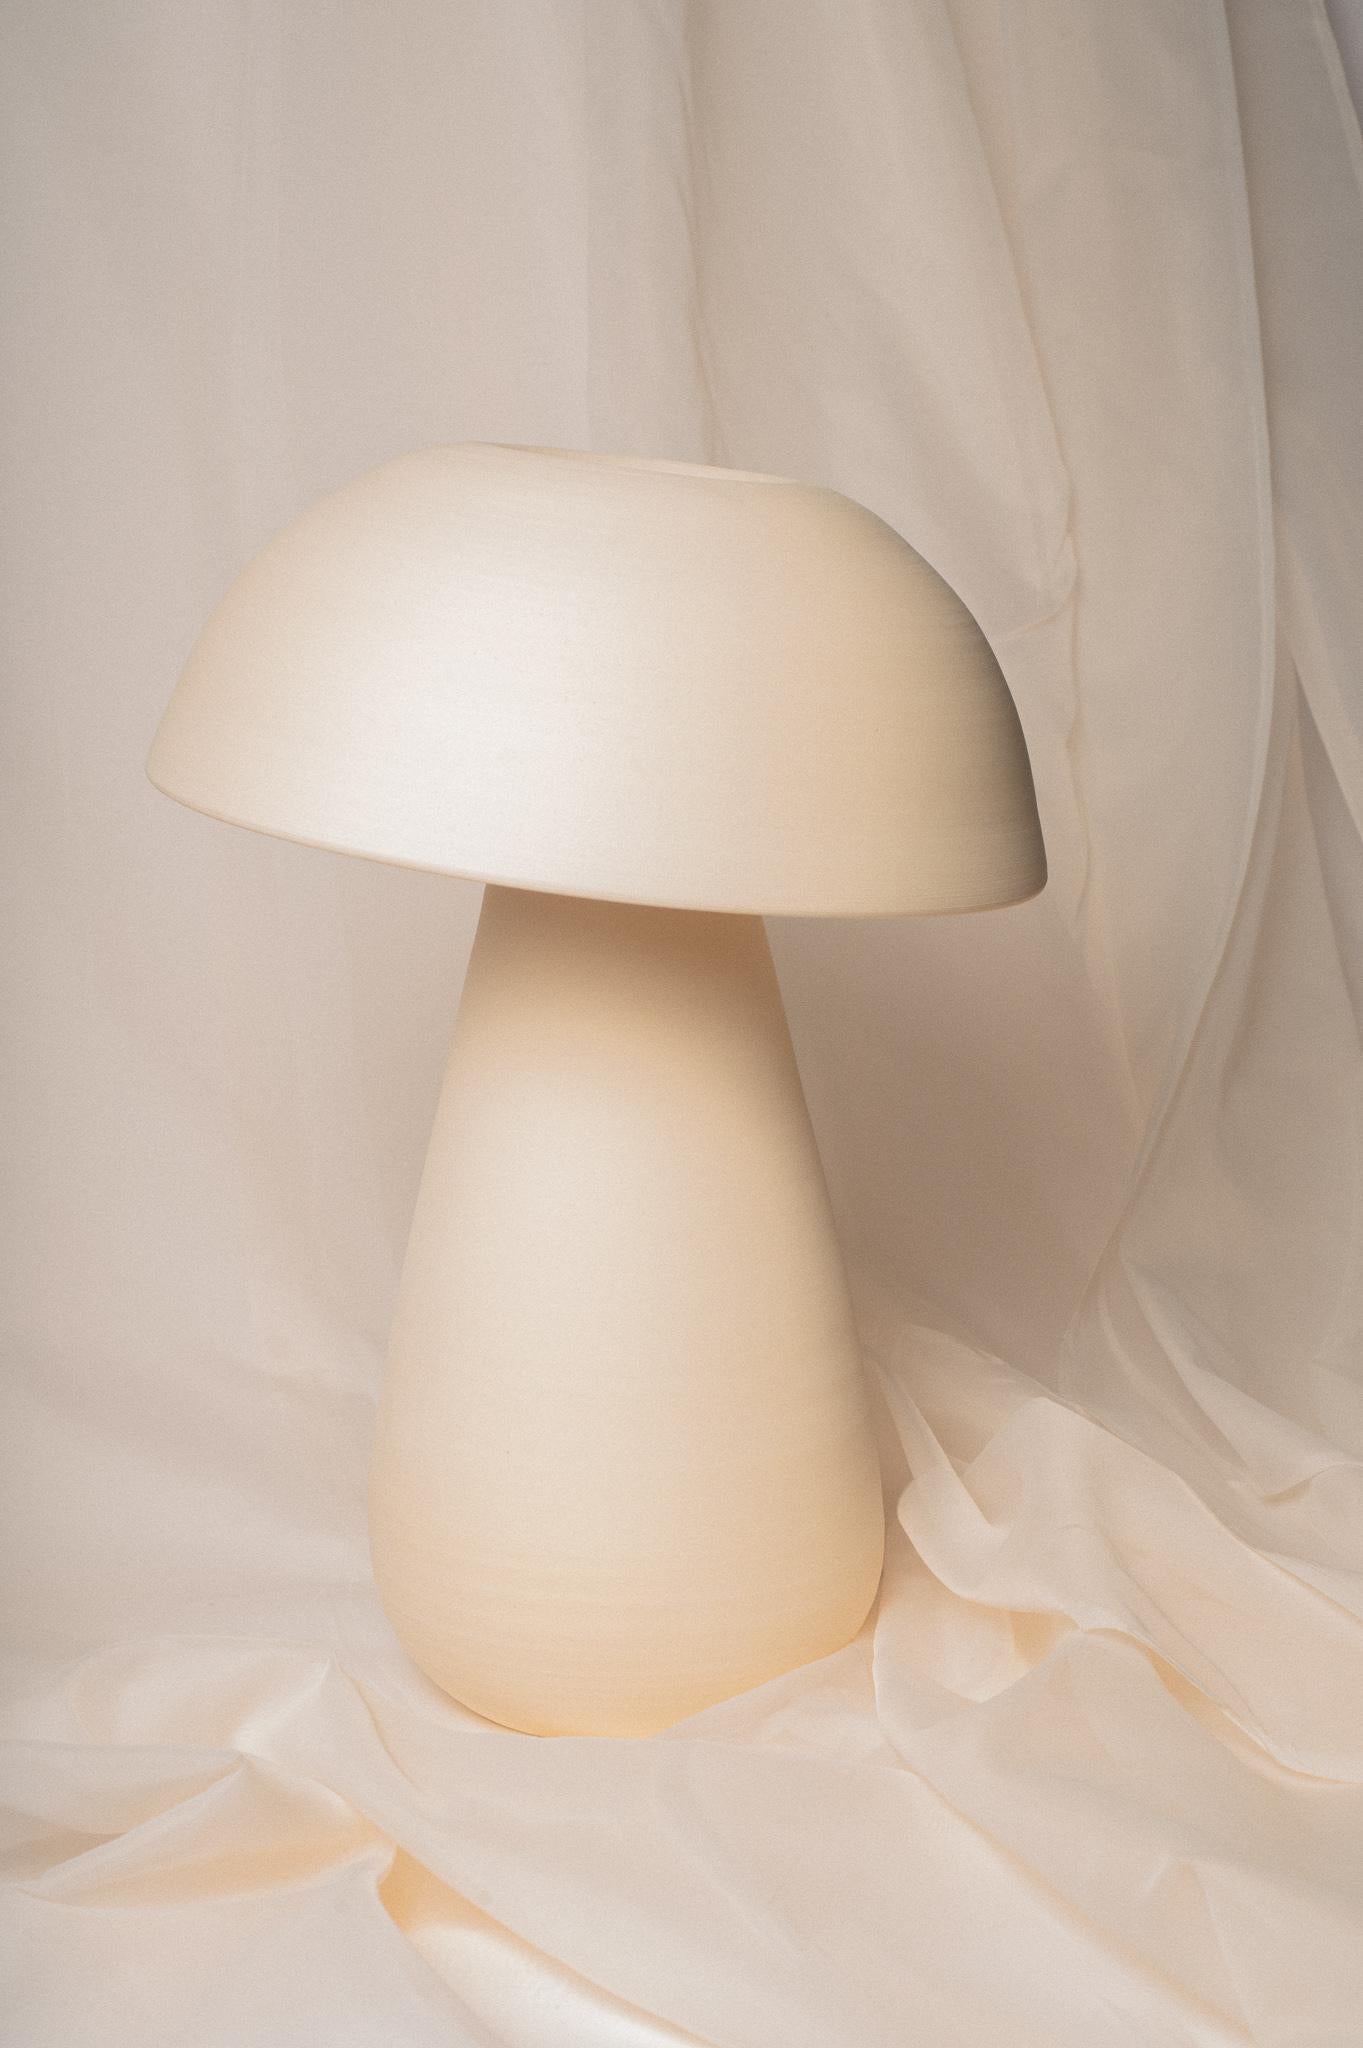 Petite lampe champignon par Nick Pourfard
Dimensions : Ø 33 x H 38 cm.
Matériaux : céramique.
Différentes finitions disponibles. Veuillez nous contacter.

Toutes nos lampes peuvent être câblées en fonction de chaque pays. Si elle est vendue aux